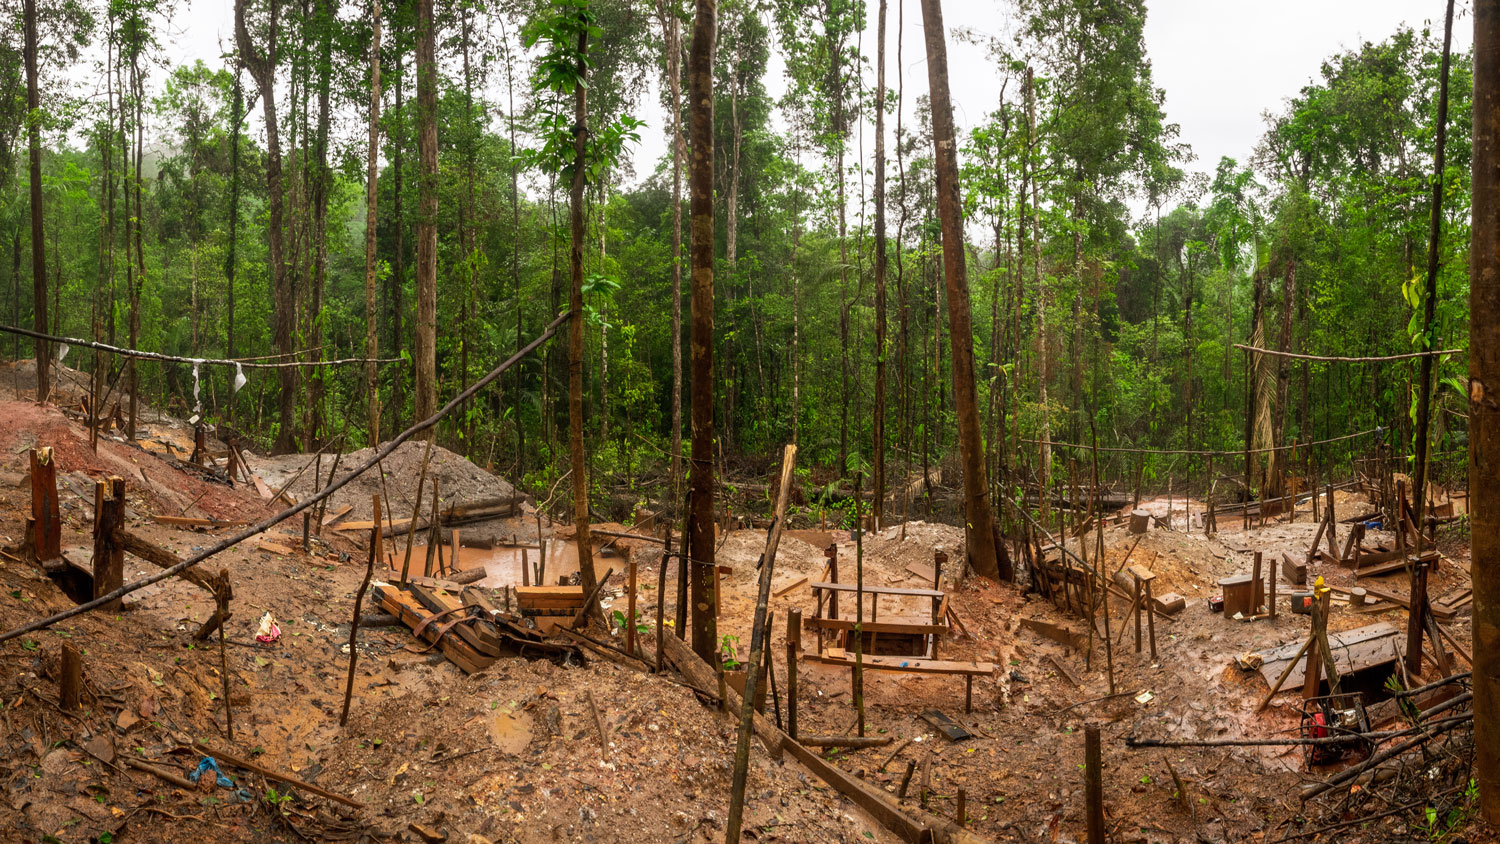 Image de la destruction d’un site d’orpaillage illégal – crédit WWF